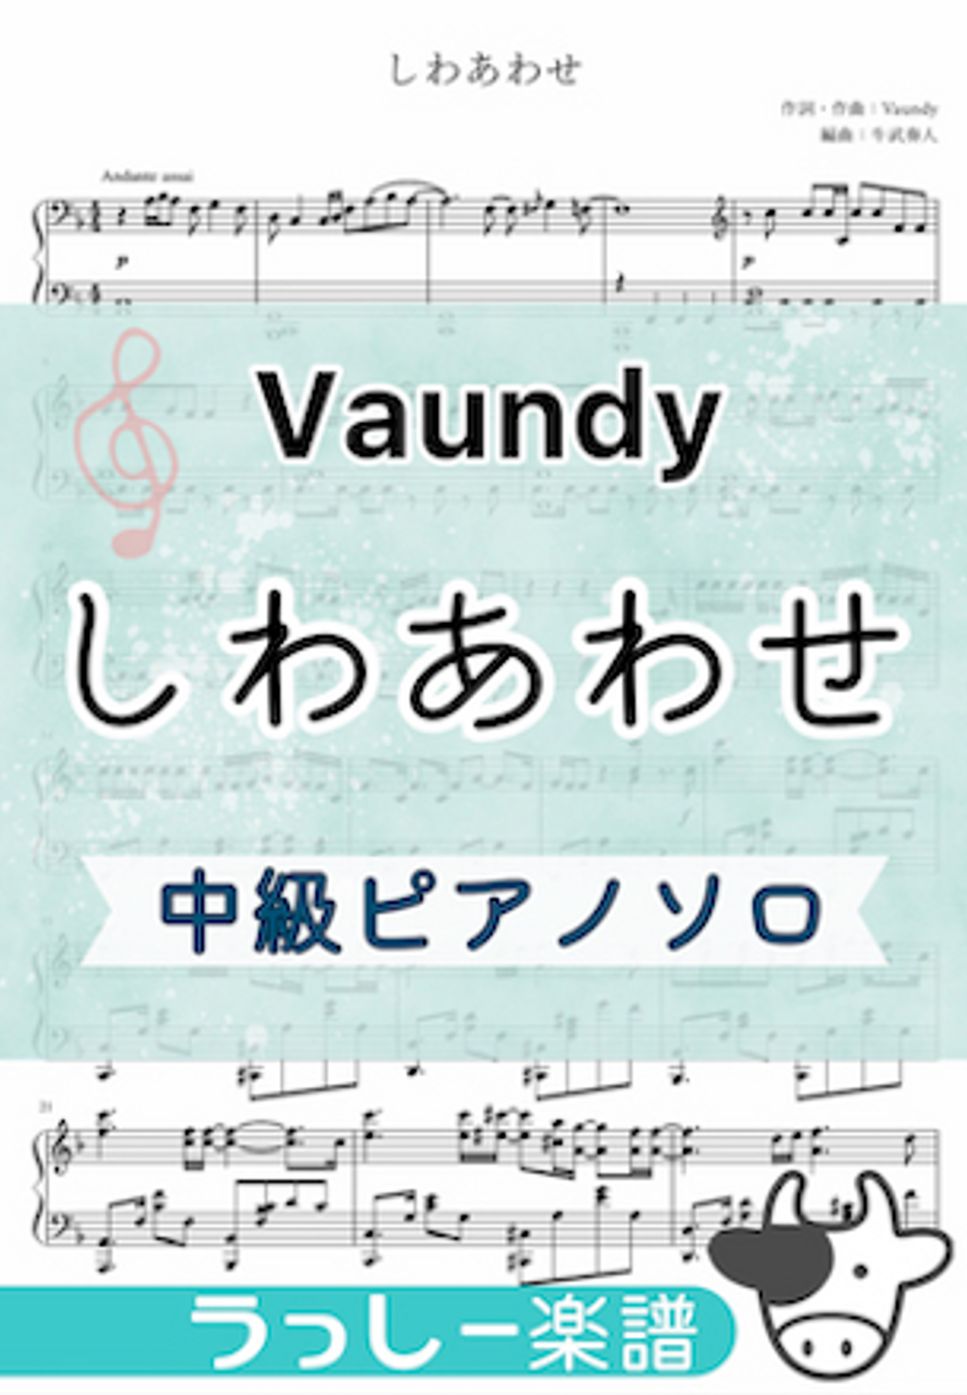 Vaundy - しわあわせ (中級ピアノソロ) by 牛武奏人